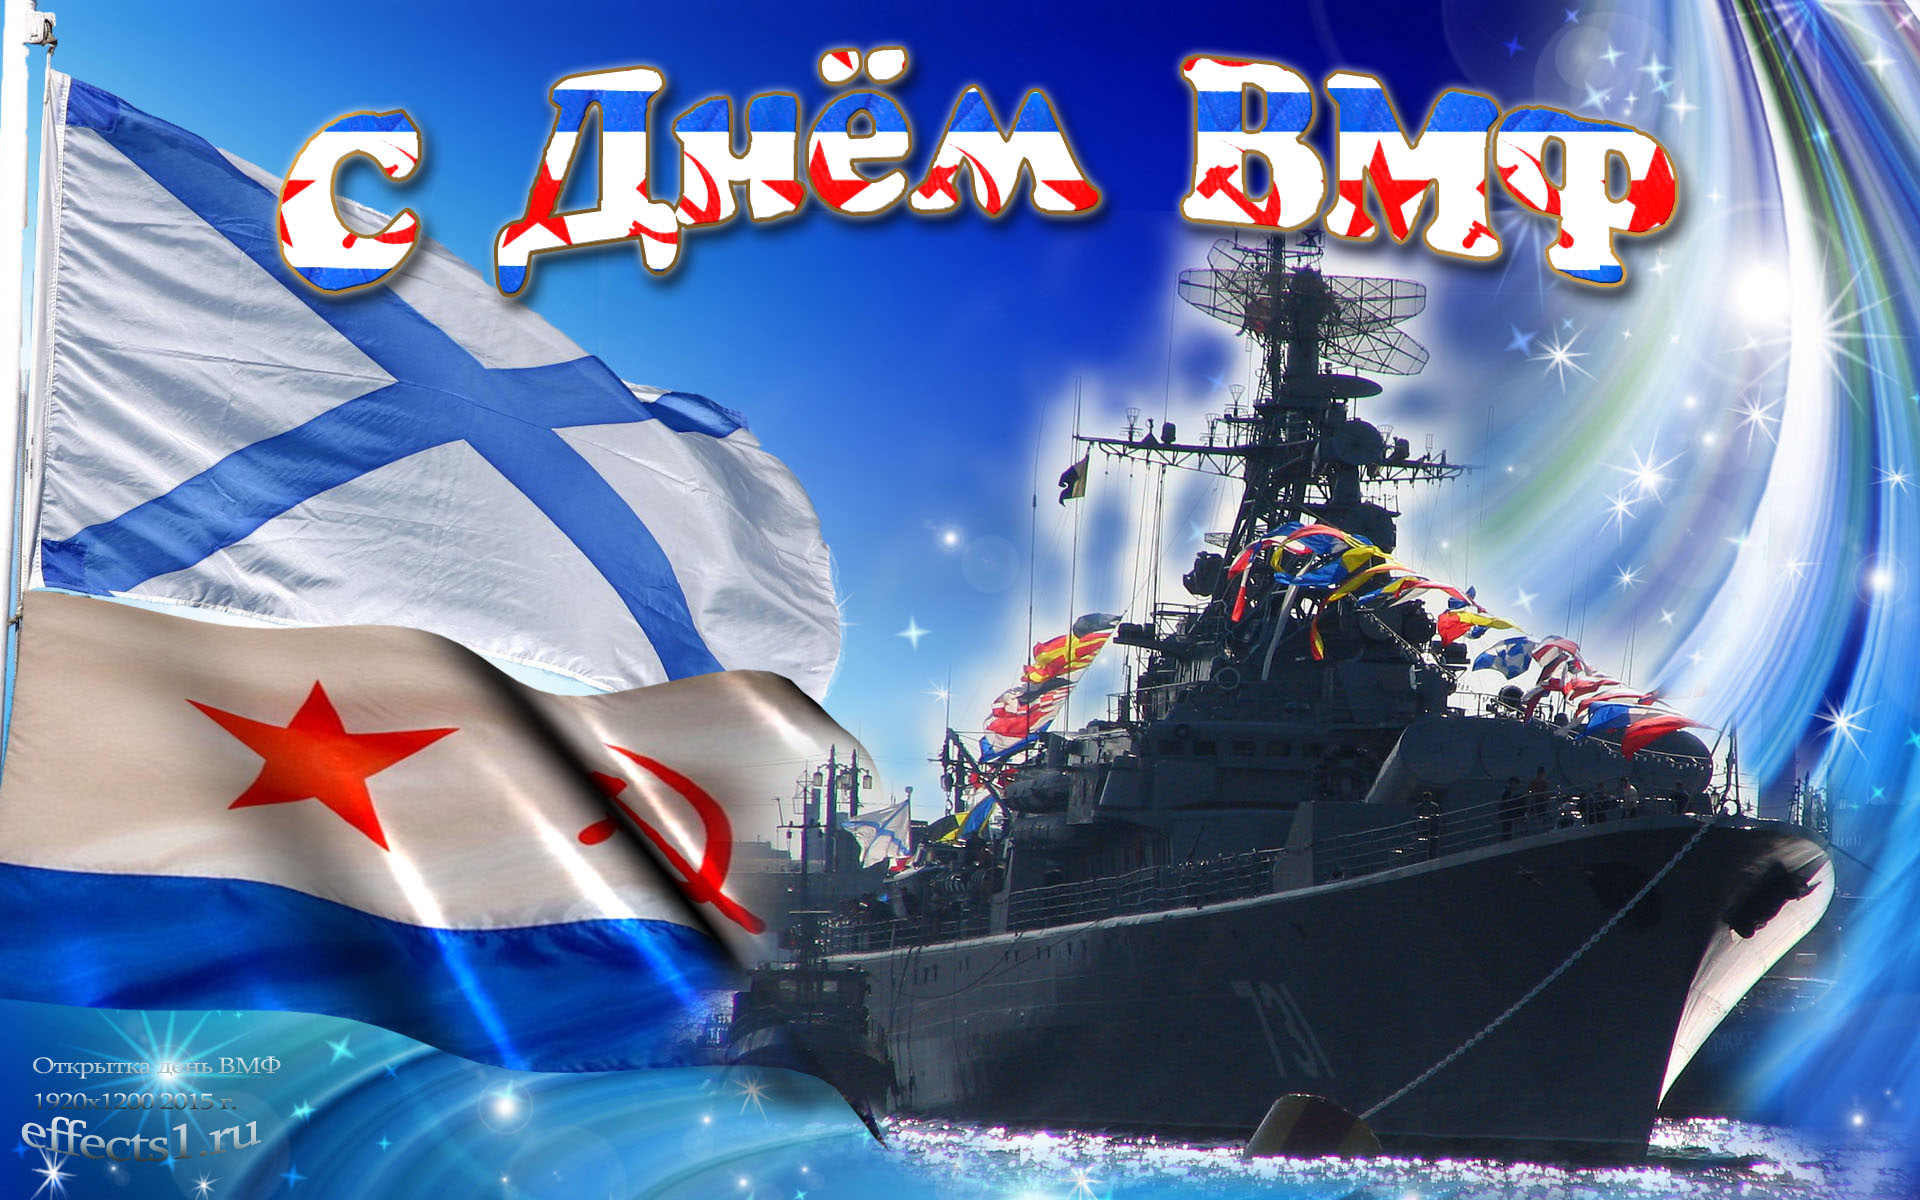 Поздравление С днем Военно-морского флота!